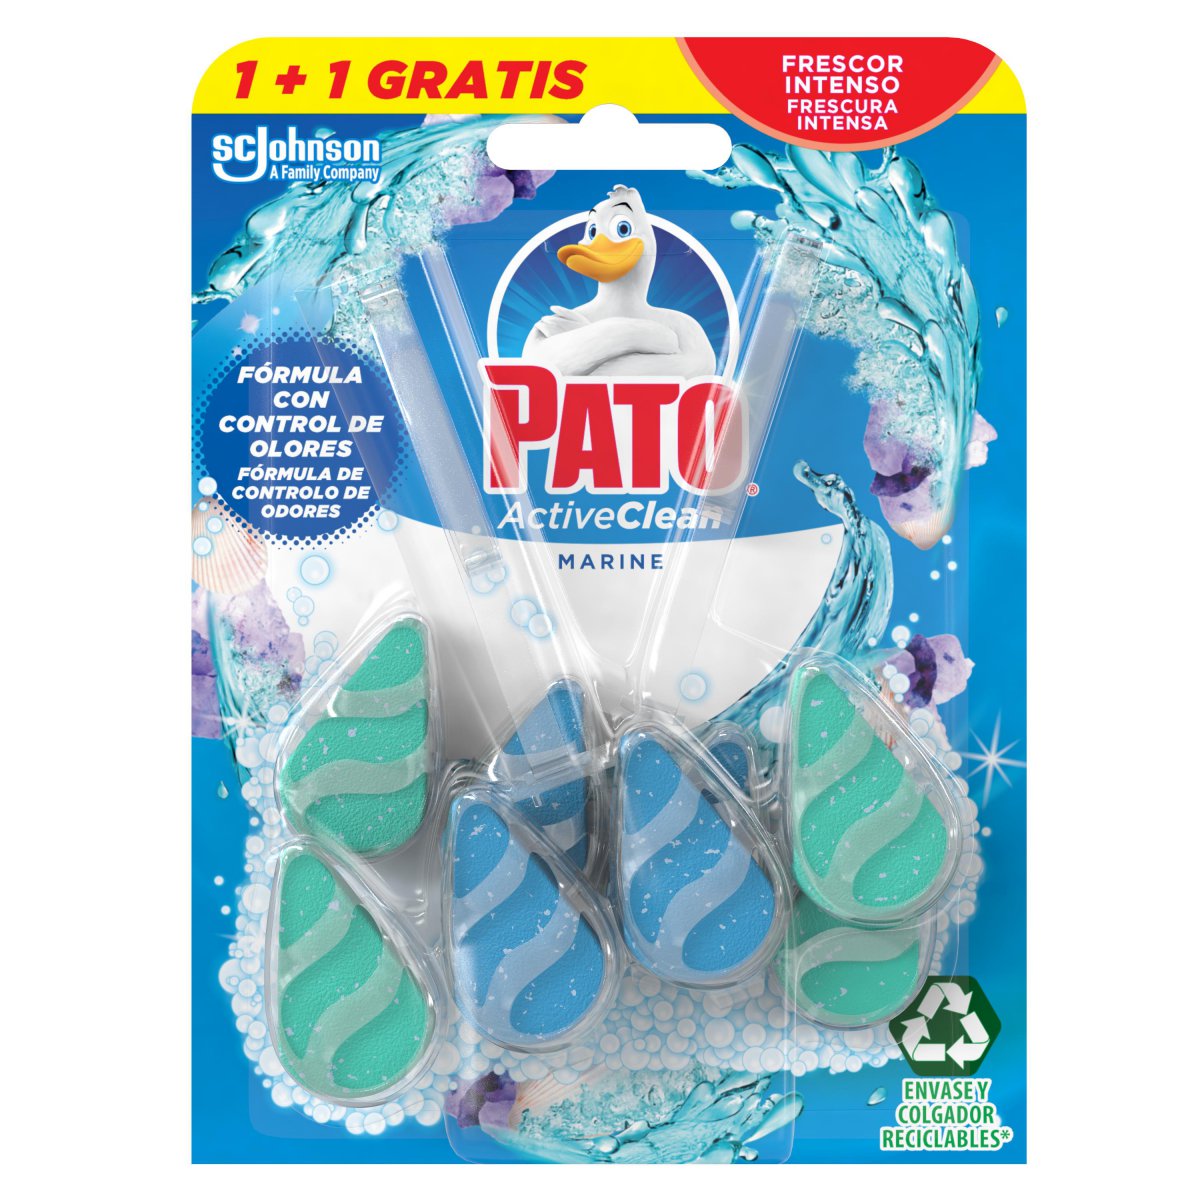 Comprar Wc pato active clean marine en Cáceres